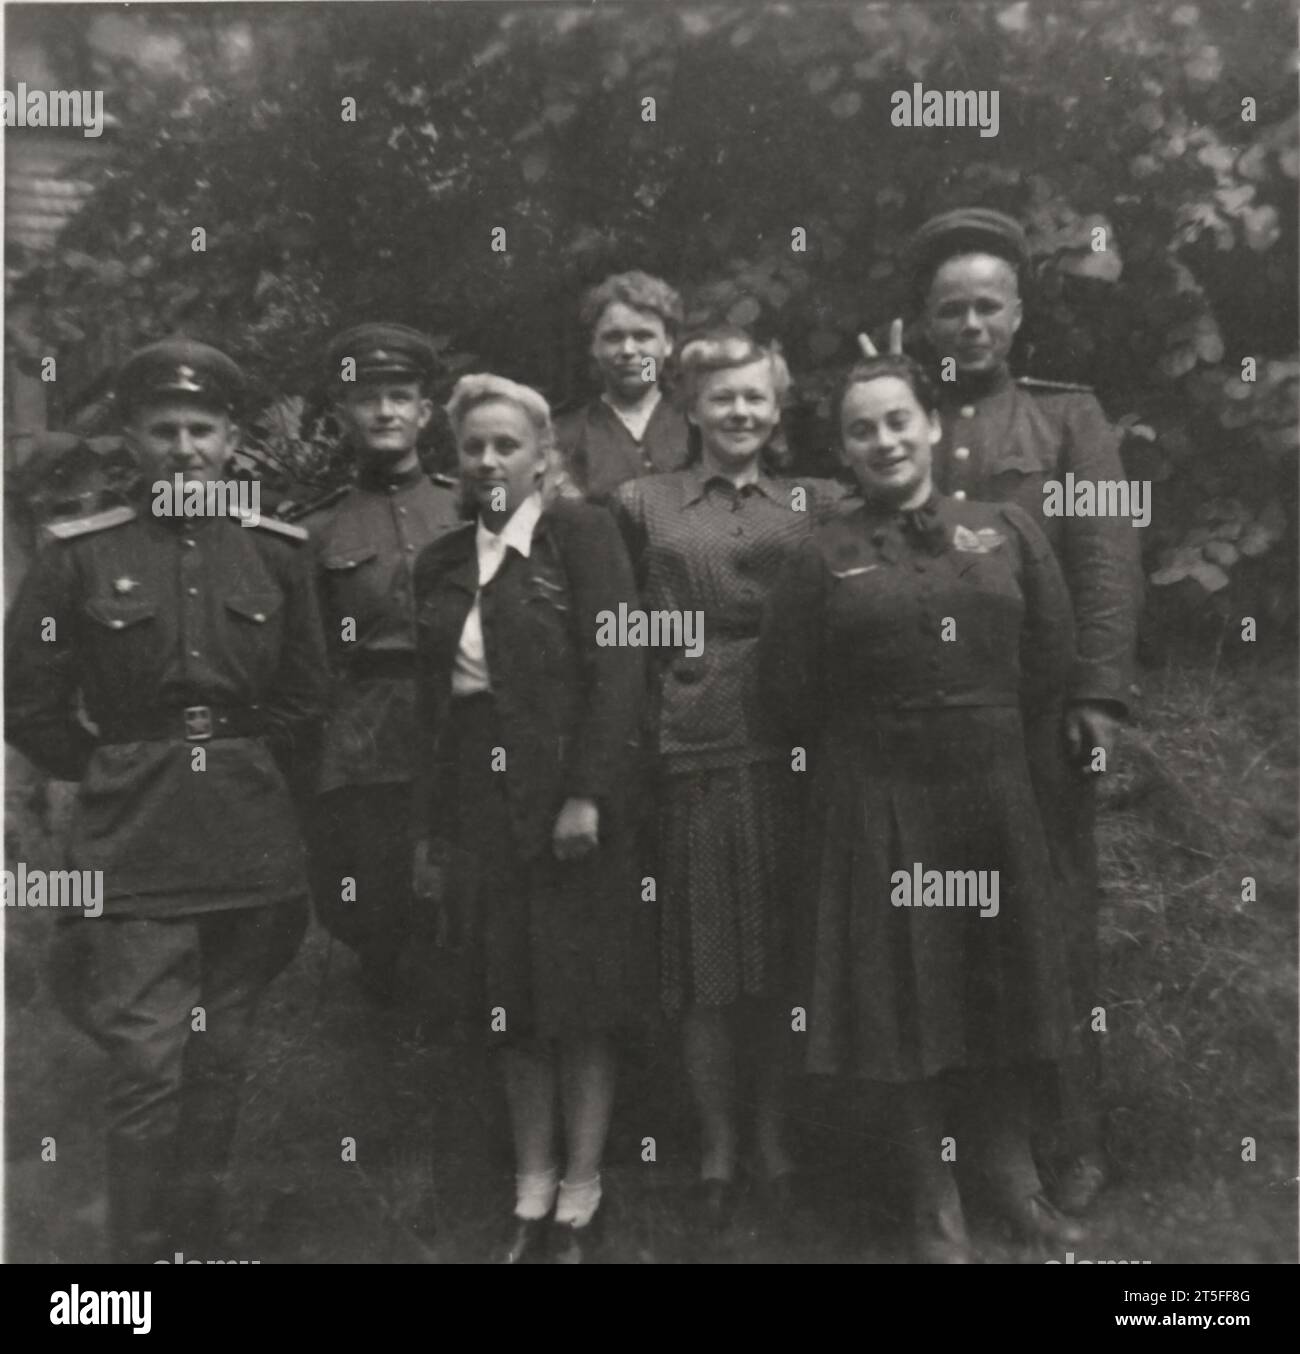 Vintage-Amateurgruppenfoto von glücklichem sowjetischem Militär nach dem 2. weltkrieg, Deutschland, 1946-1948 Stockfoto